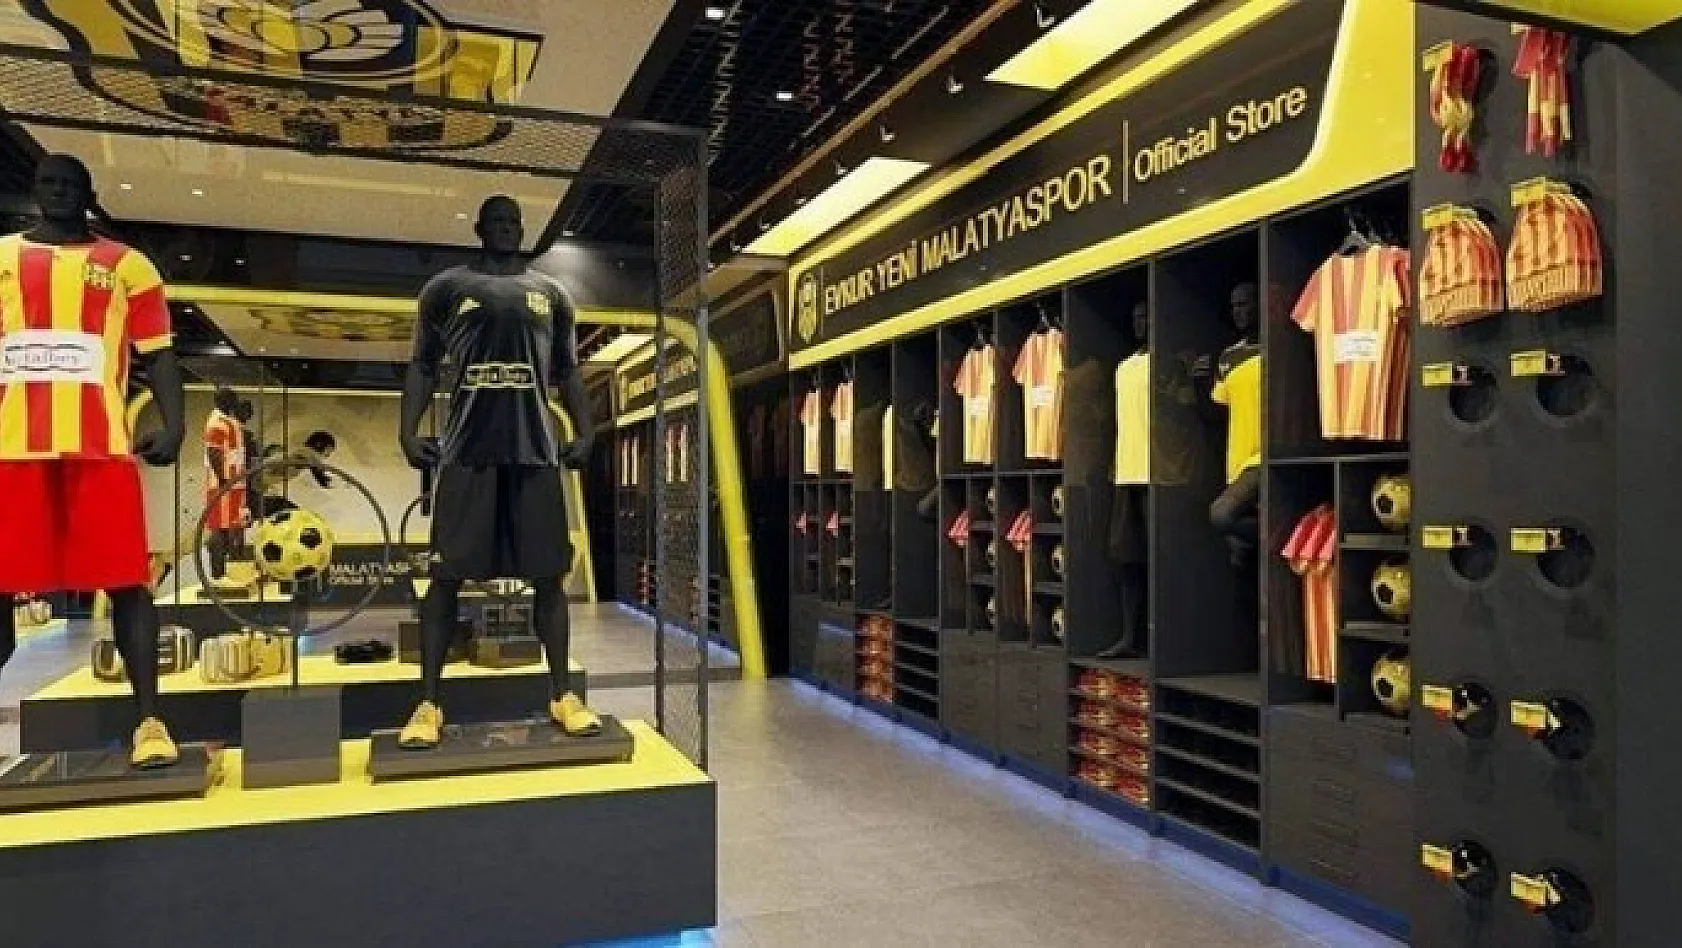 E.Yeni Malatyaspor, İstanbul'a resmi ürün mağazası açıyor 